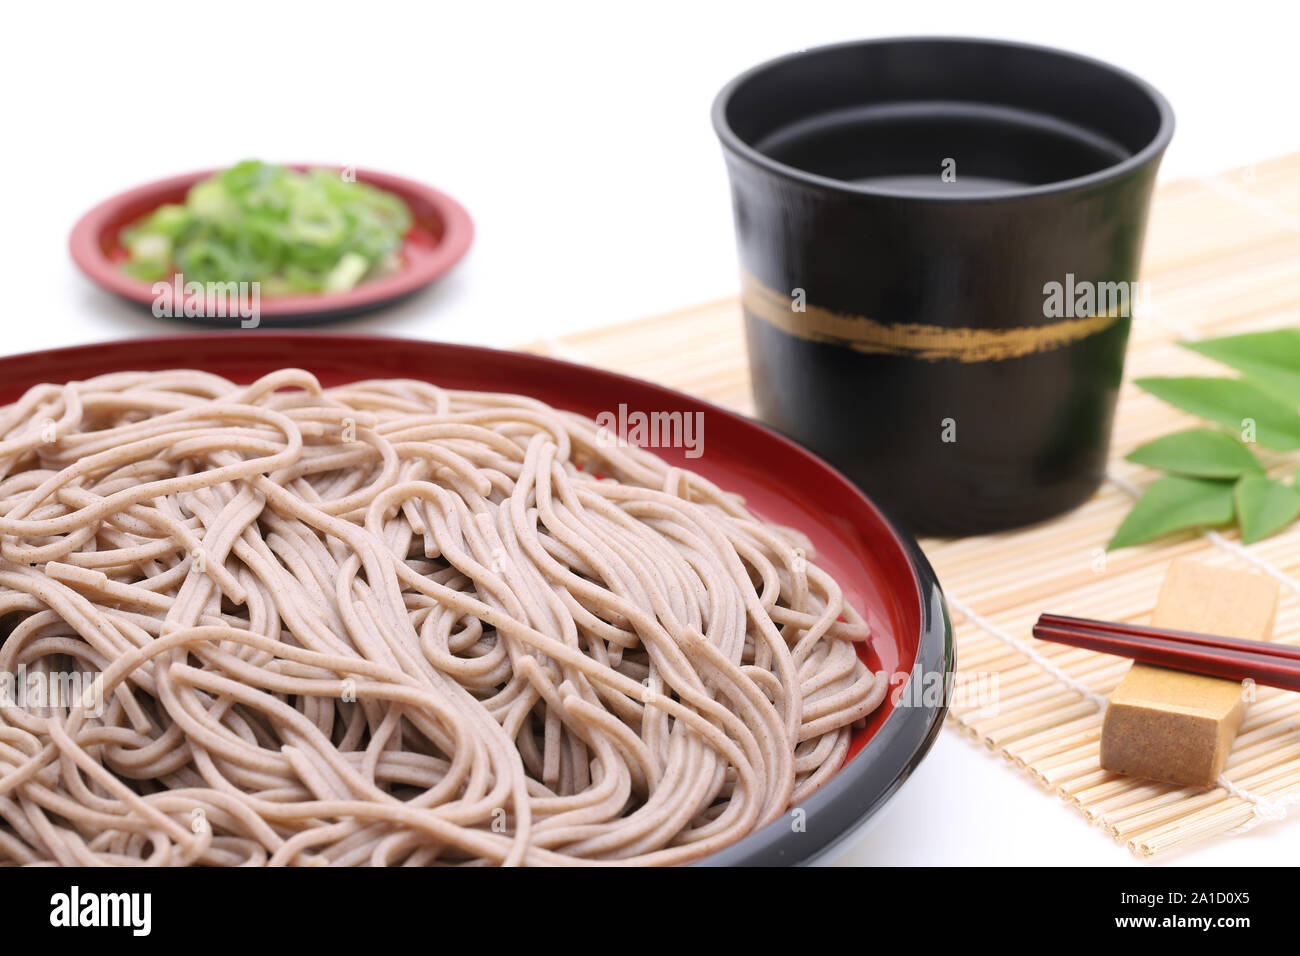 Japanese Zaru soba noodles sur plaque de bois Banque D'Images